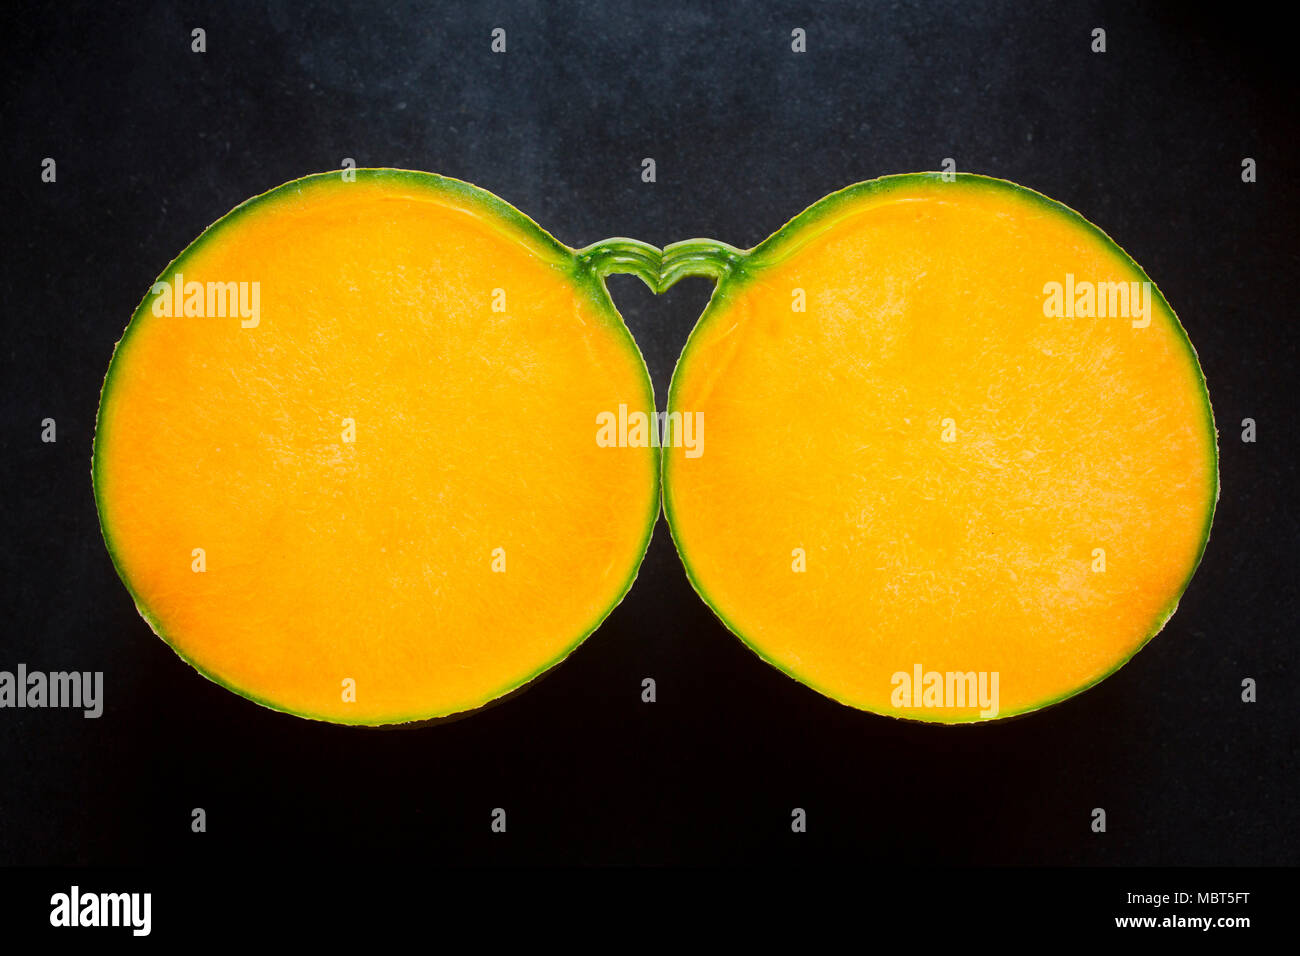 Der Raum zwischen zwei Hälften einer Melone und seinen Stiel bildet eine Herzform. Stockfoto